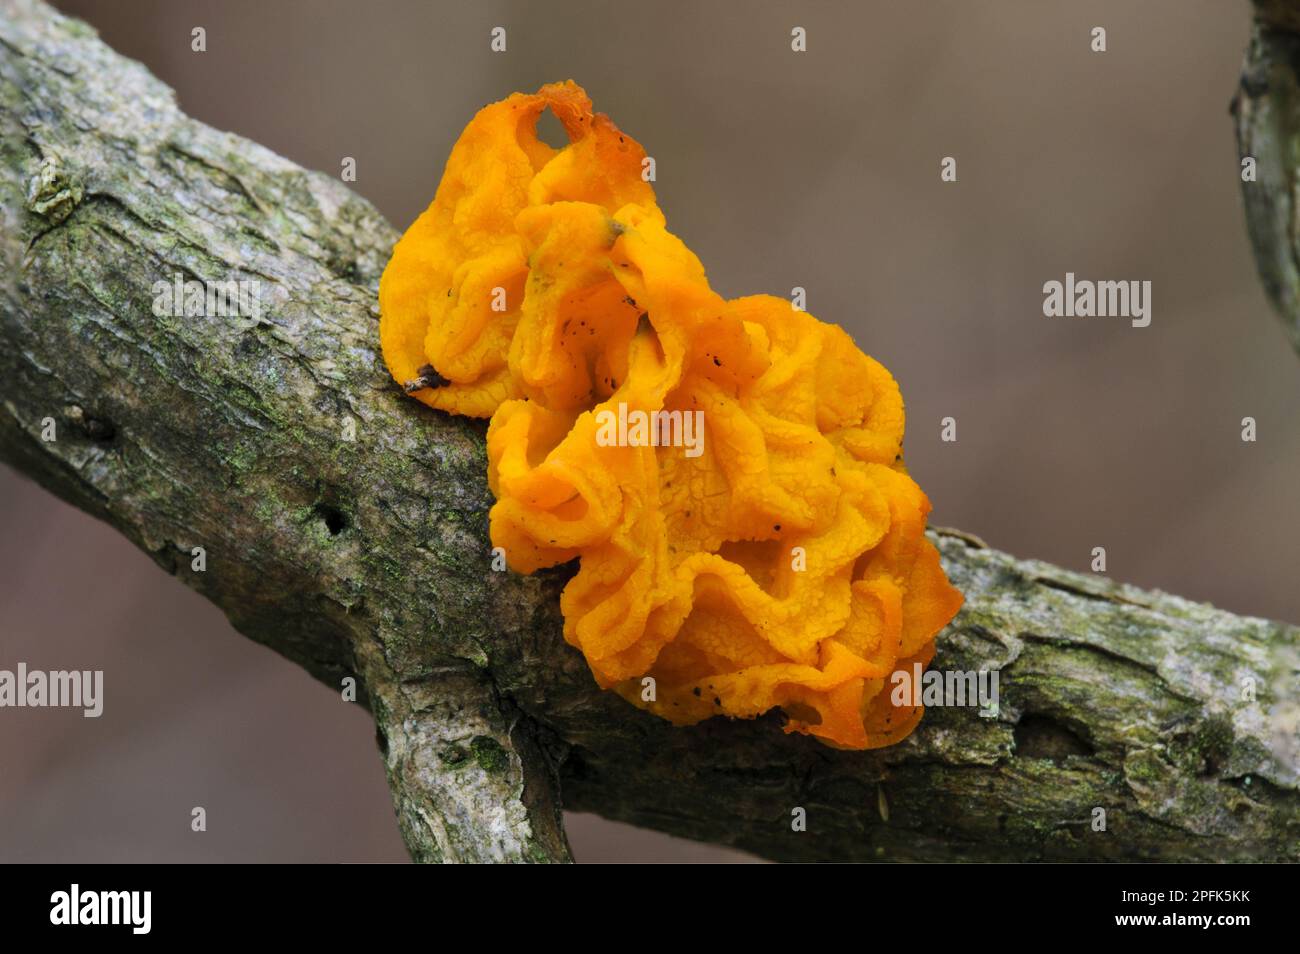 Cervello giallo (Tremella mesenterica) Fungus corpo fruttifero, che cresce su ramoscello, Gilfach Farm Nature Reserve, vicino a Rhayader, Powys, Galles, Regno Unito Foto Stock